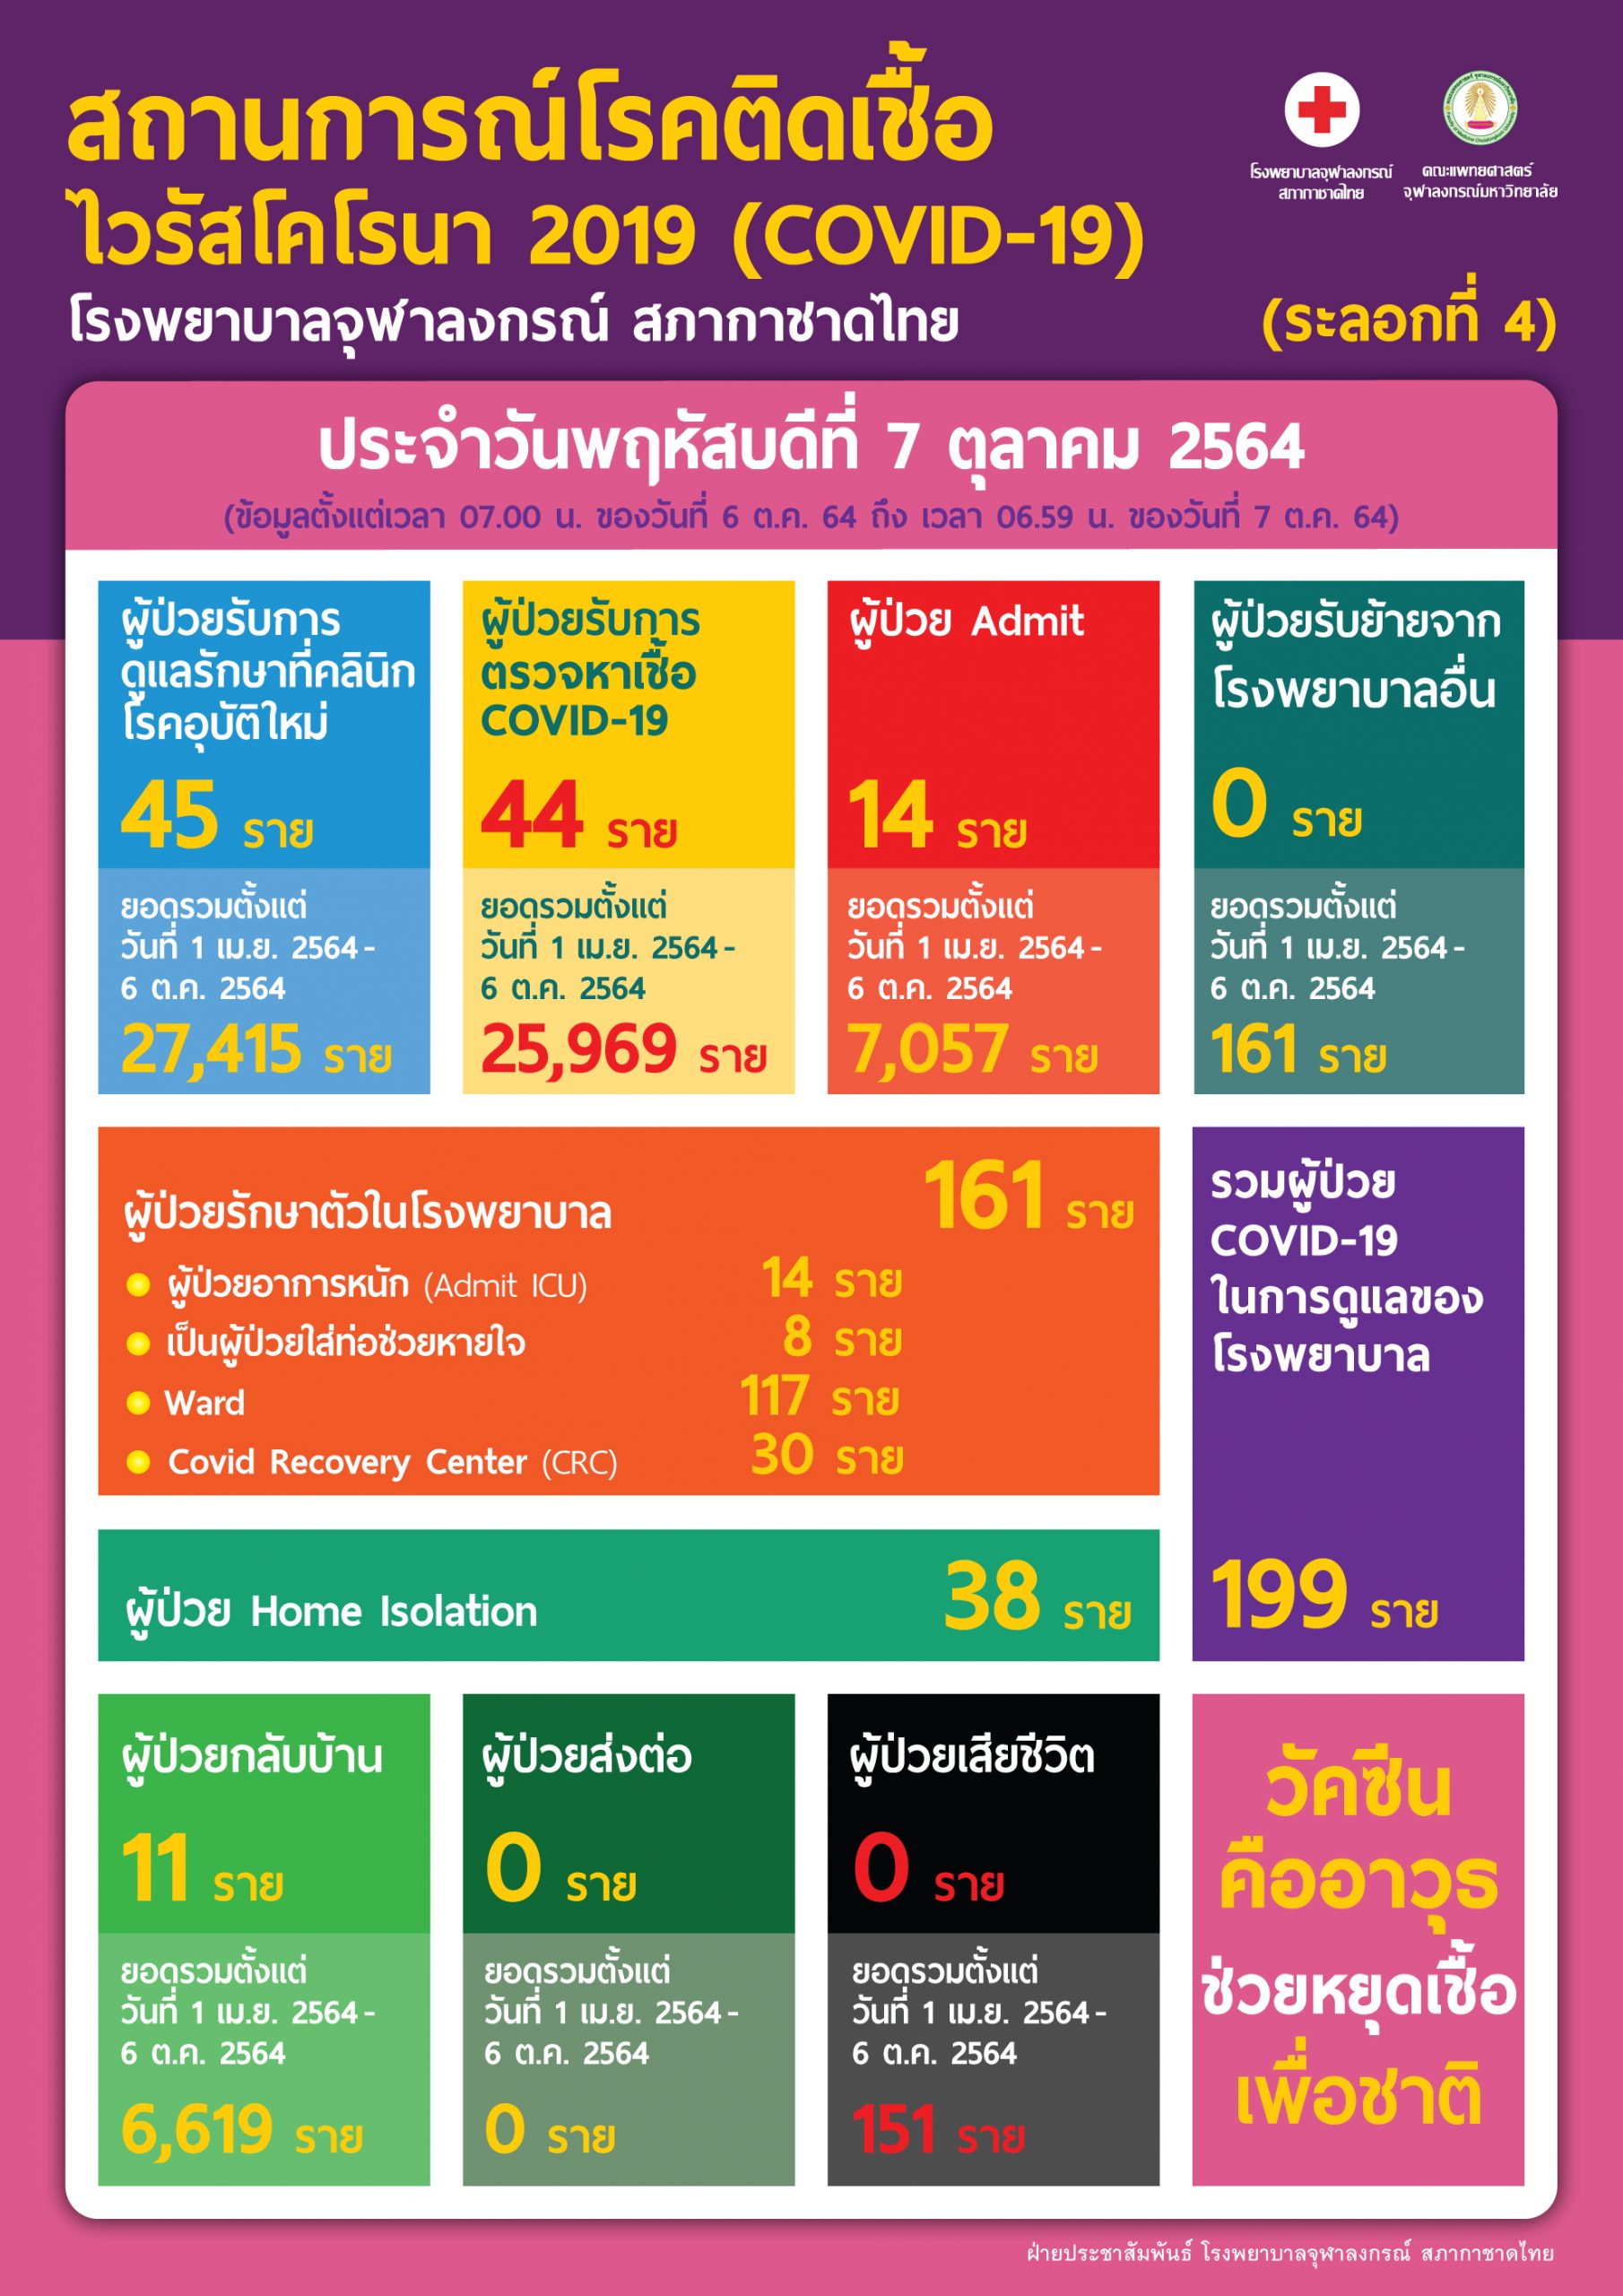 สถานการณ์โรคติดเชื้อ ไวรัสโคโรนา 2019 (COVID-19) (ระลอกที่ 4) โรงพยาบาลจุฬาลงกรณ์ สภากาชาดไทย ประจำวันพฤหัสบดีที่ 7 ตุลาคม 2564